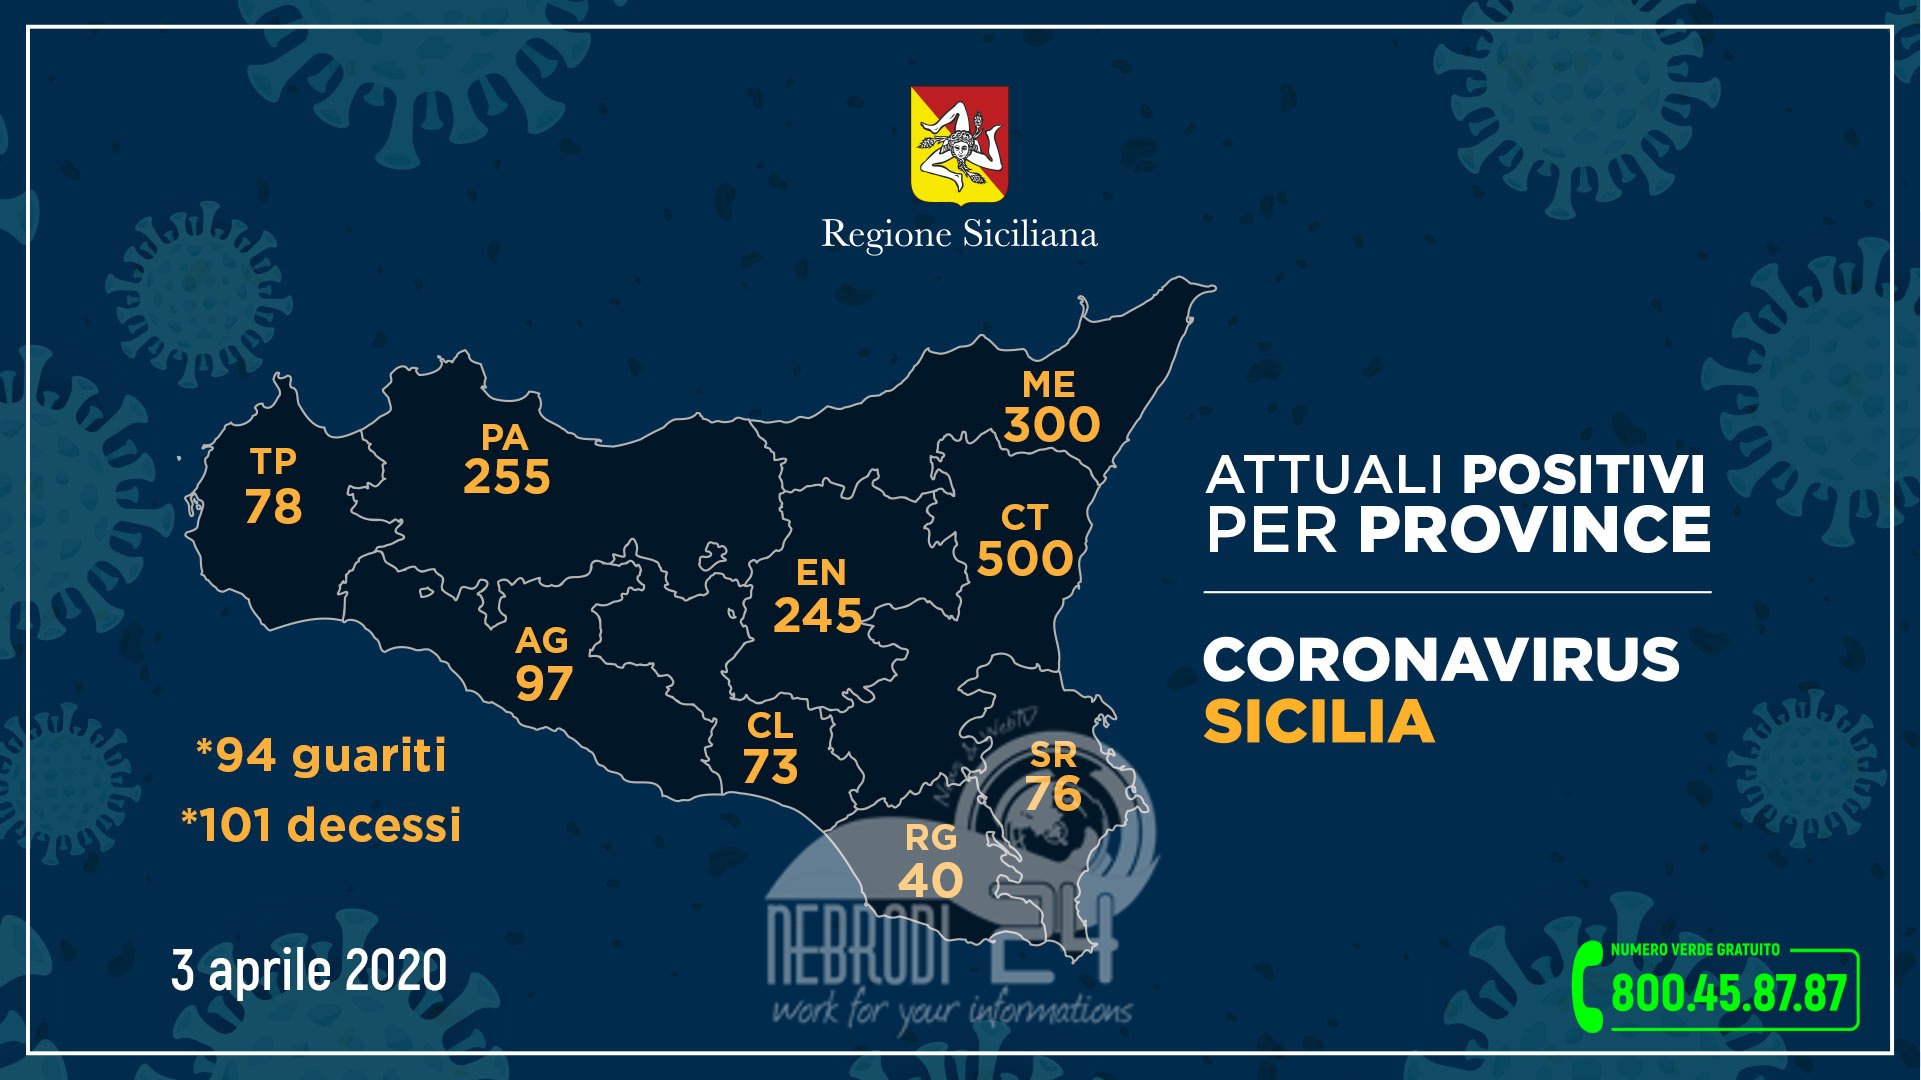 Coronavirus: l’aggiornamento in Sicilia, 1.664 attuali positivi e 94 guariti (+58 rispetto a ieri). Messina a quota 300